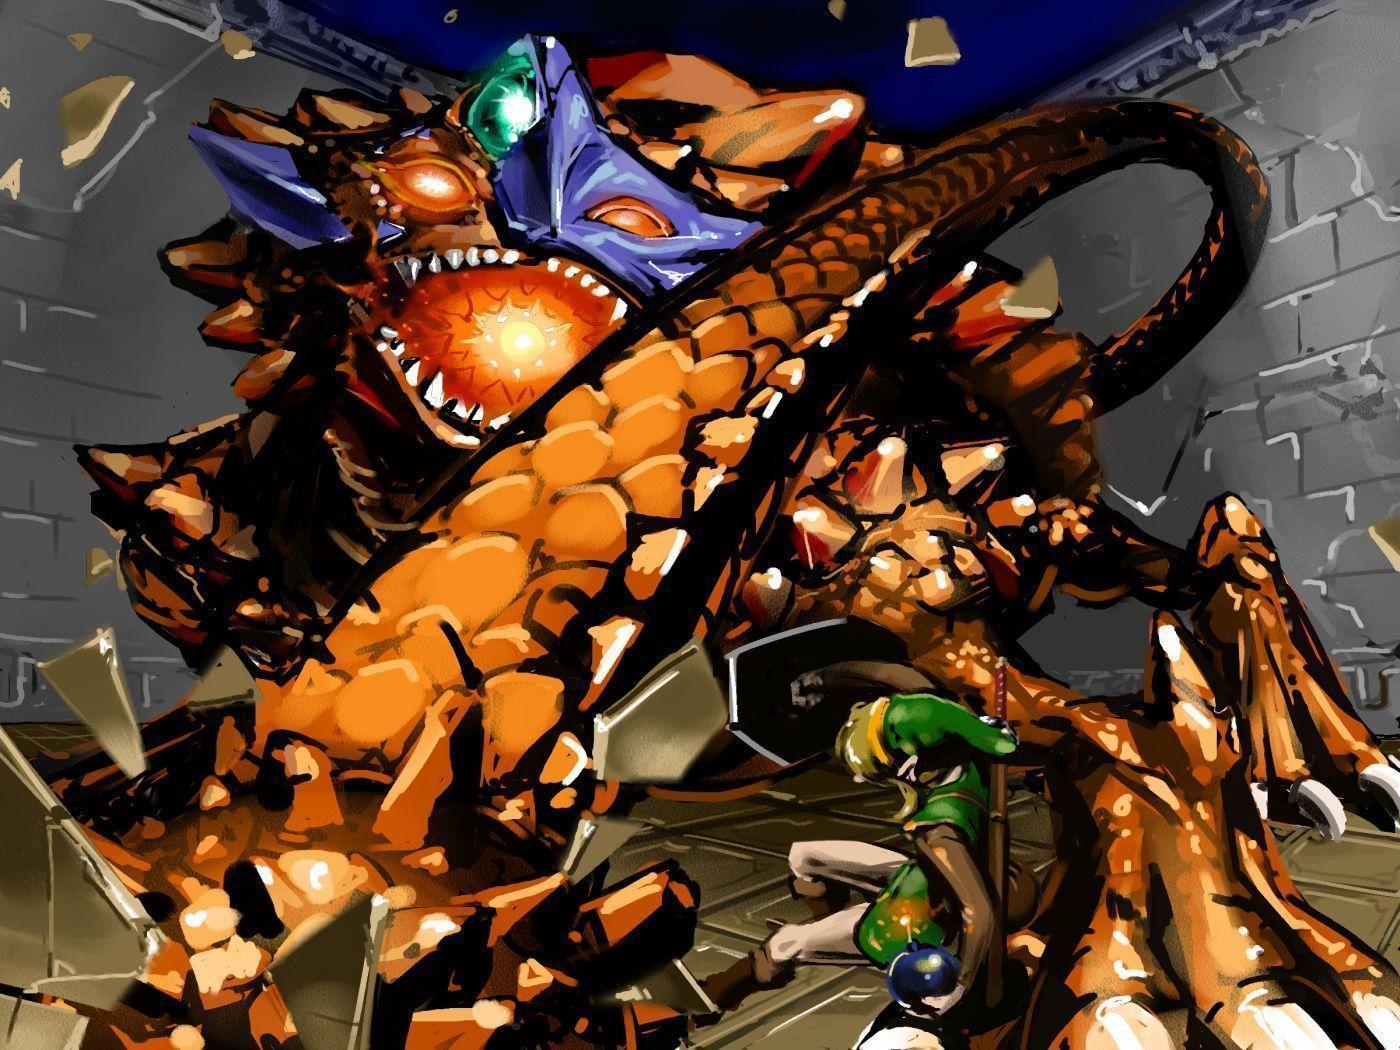 Link Battles The Helmasaur King Boss in the Dark World, A